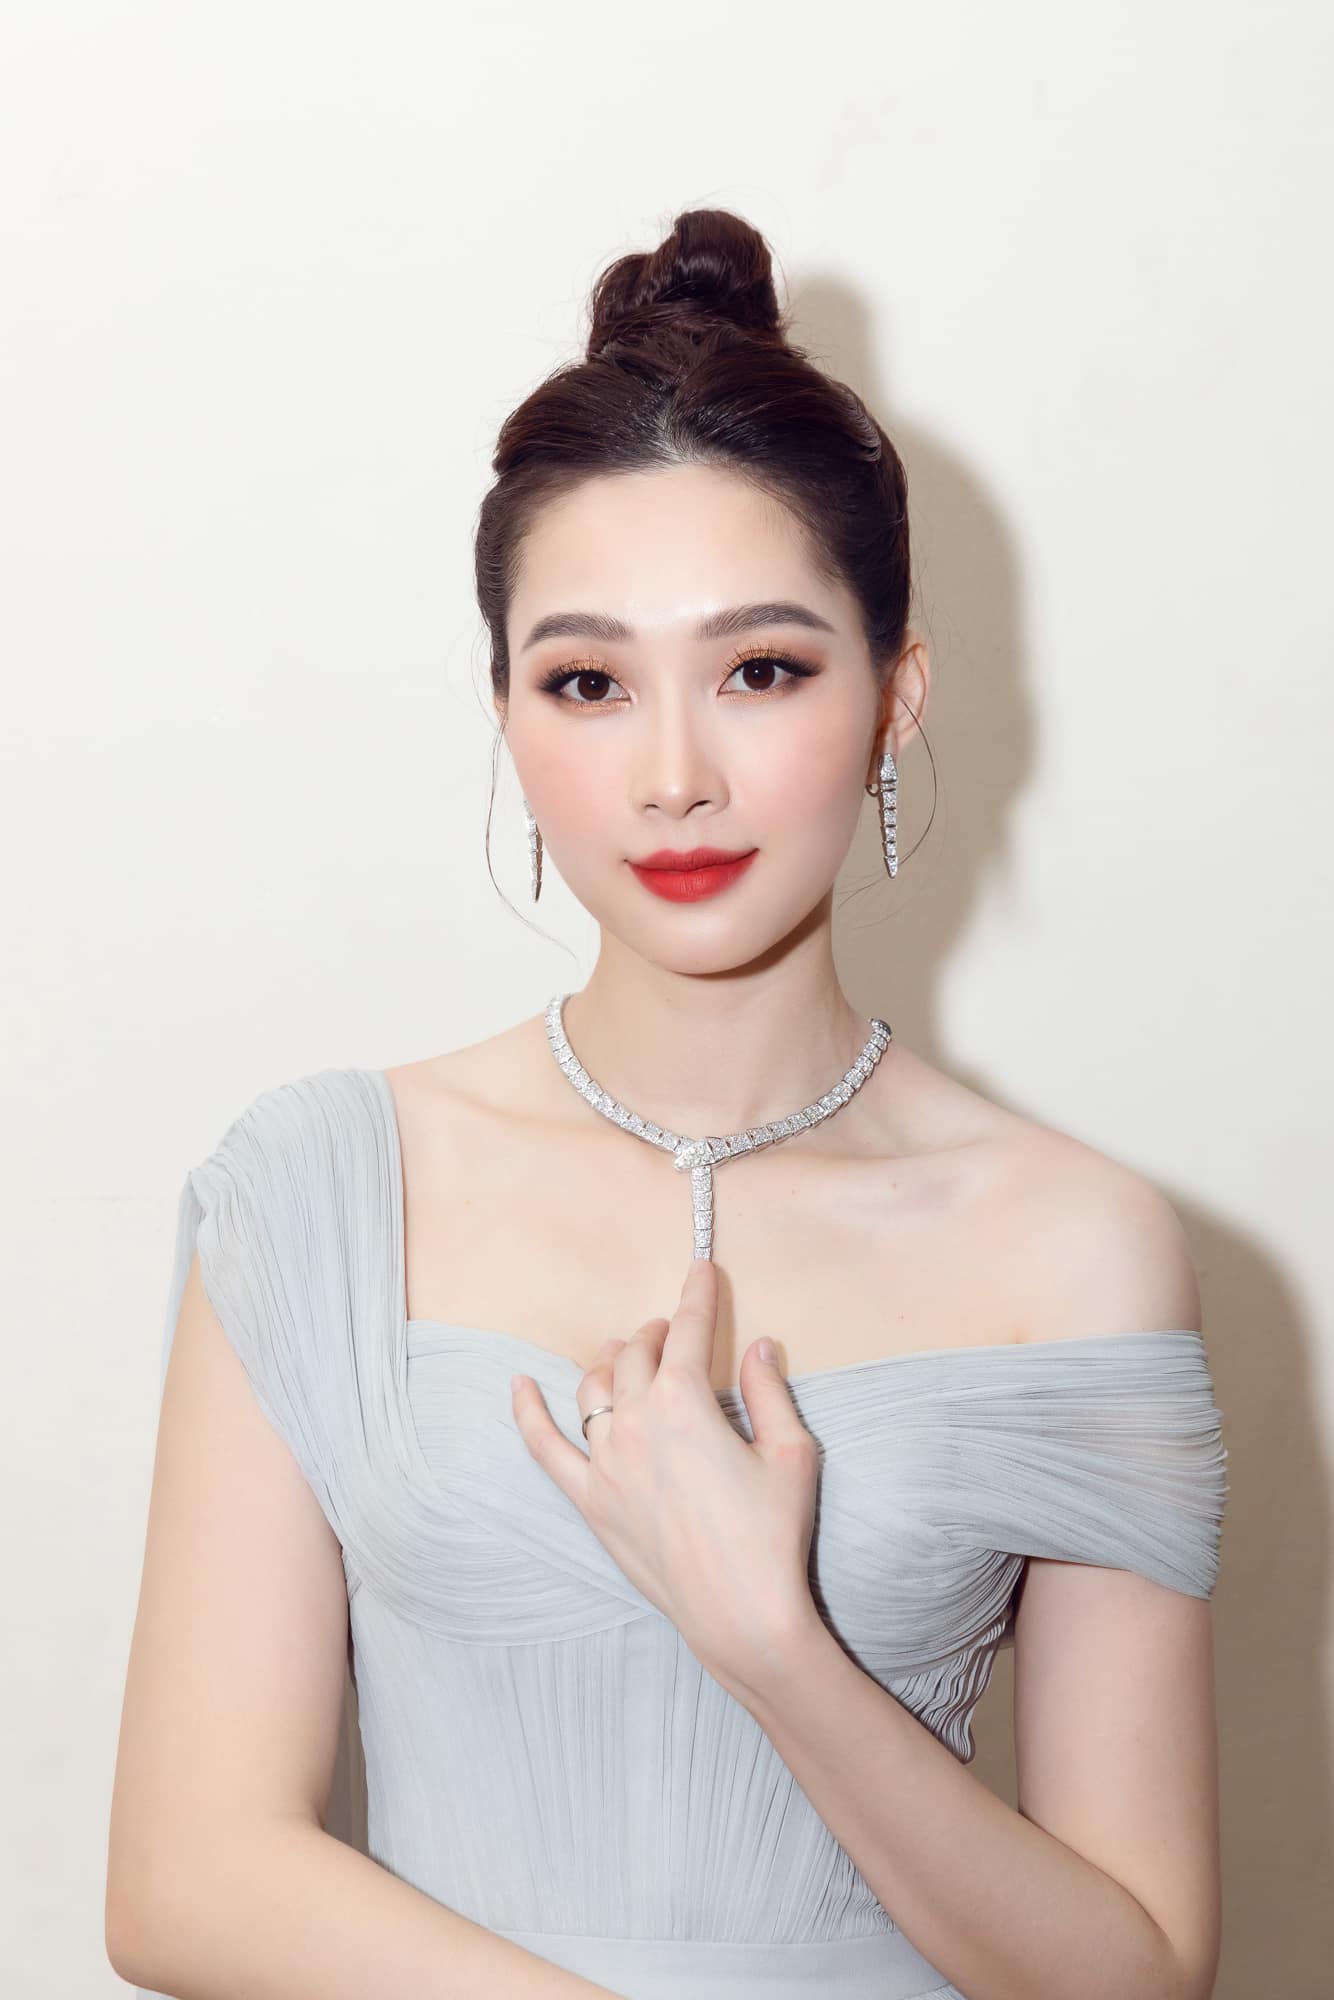 Nhan sắc xinh đẹp của Hoa hậu Việt Nam 2012 - Đặng Thu Thảo